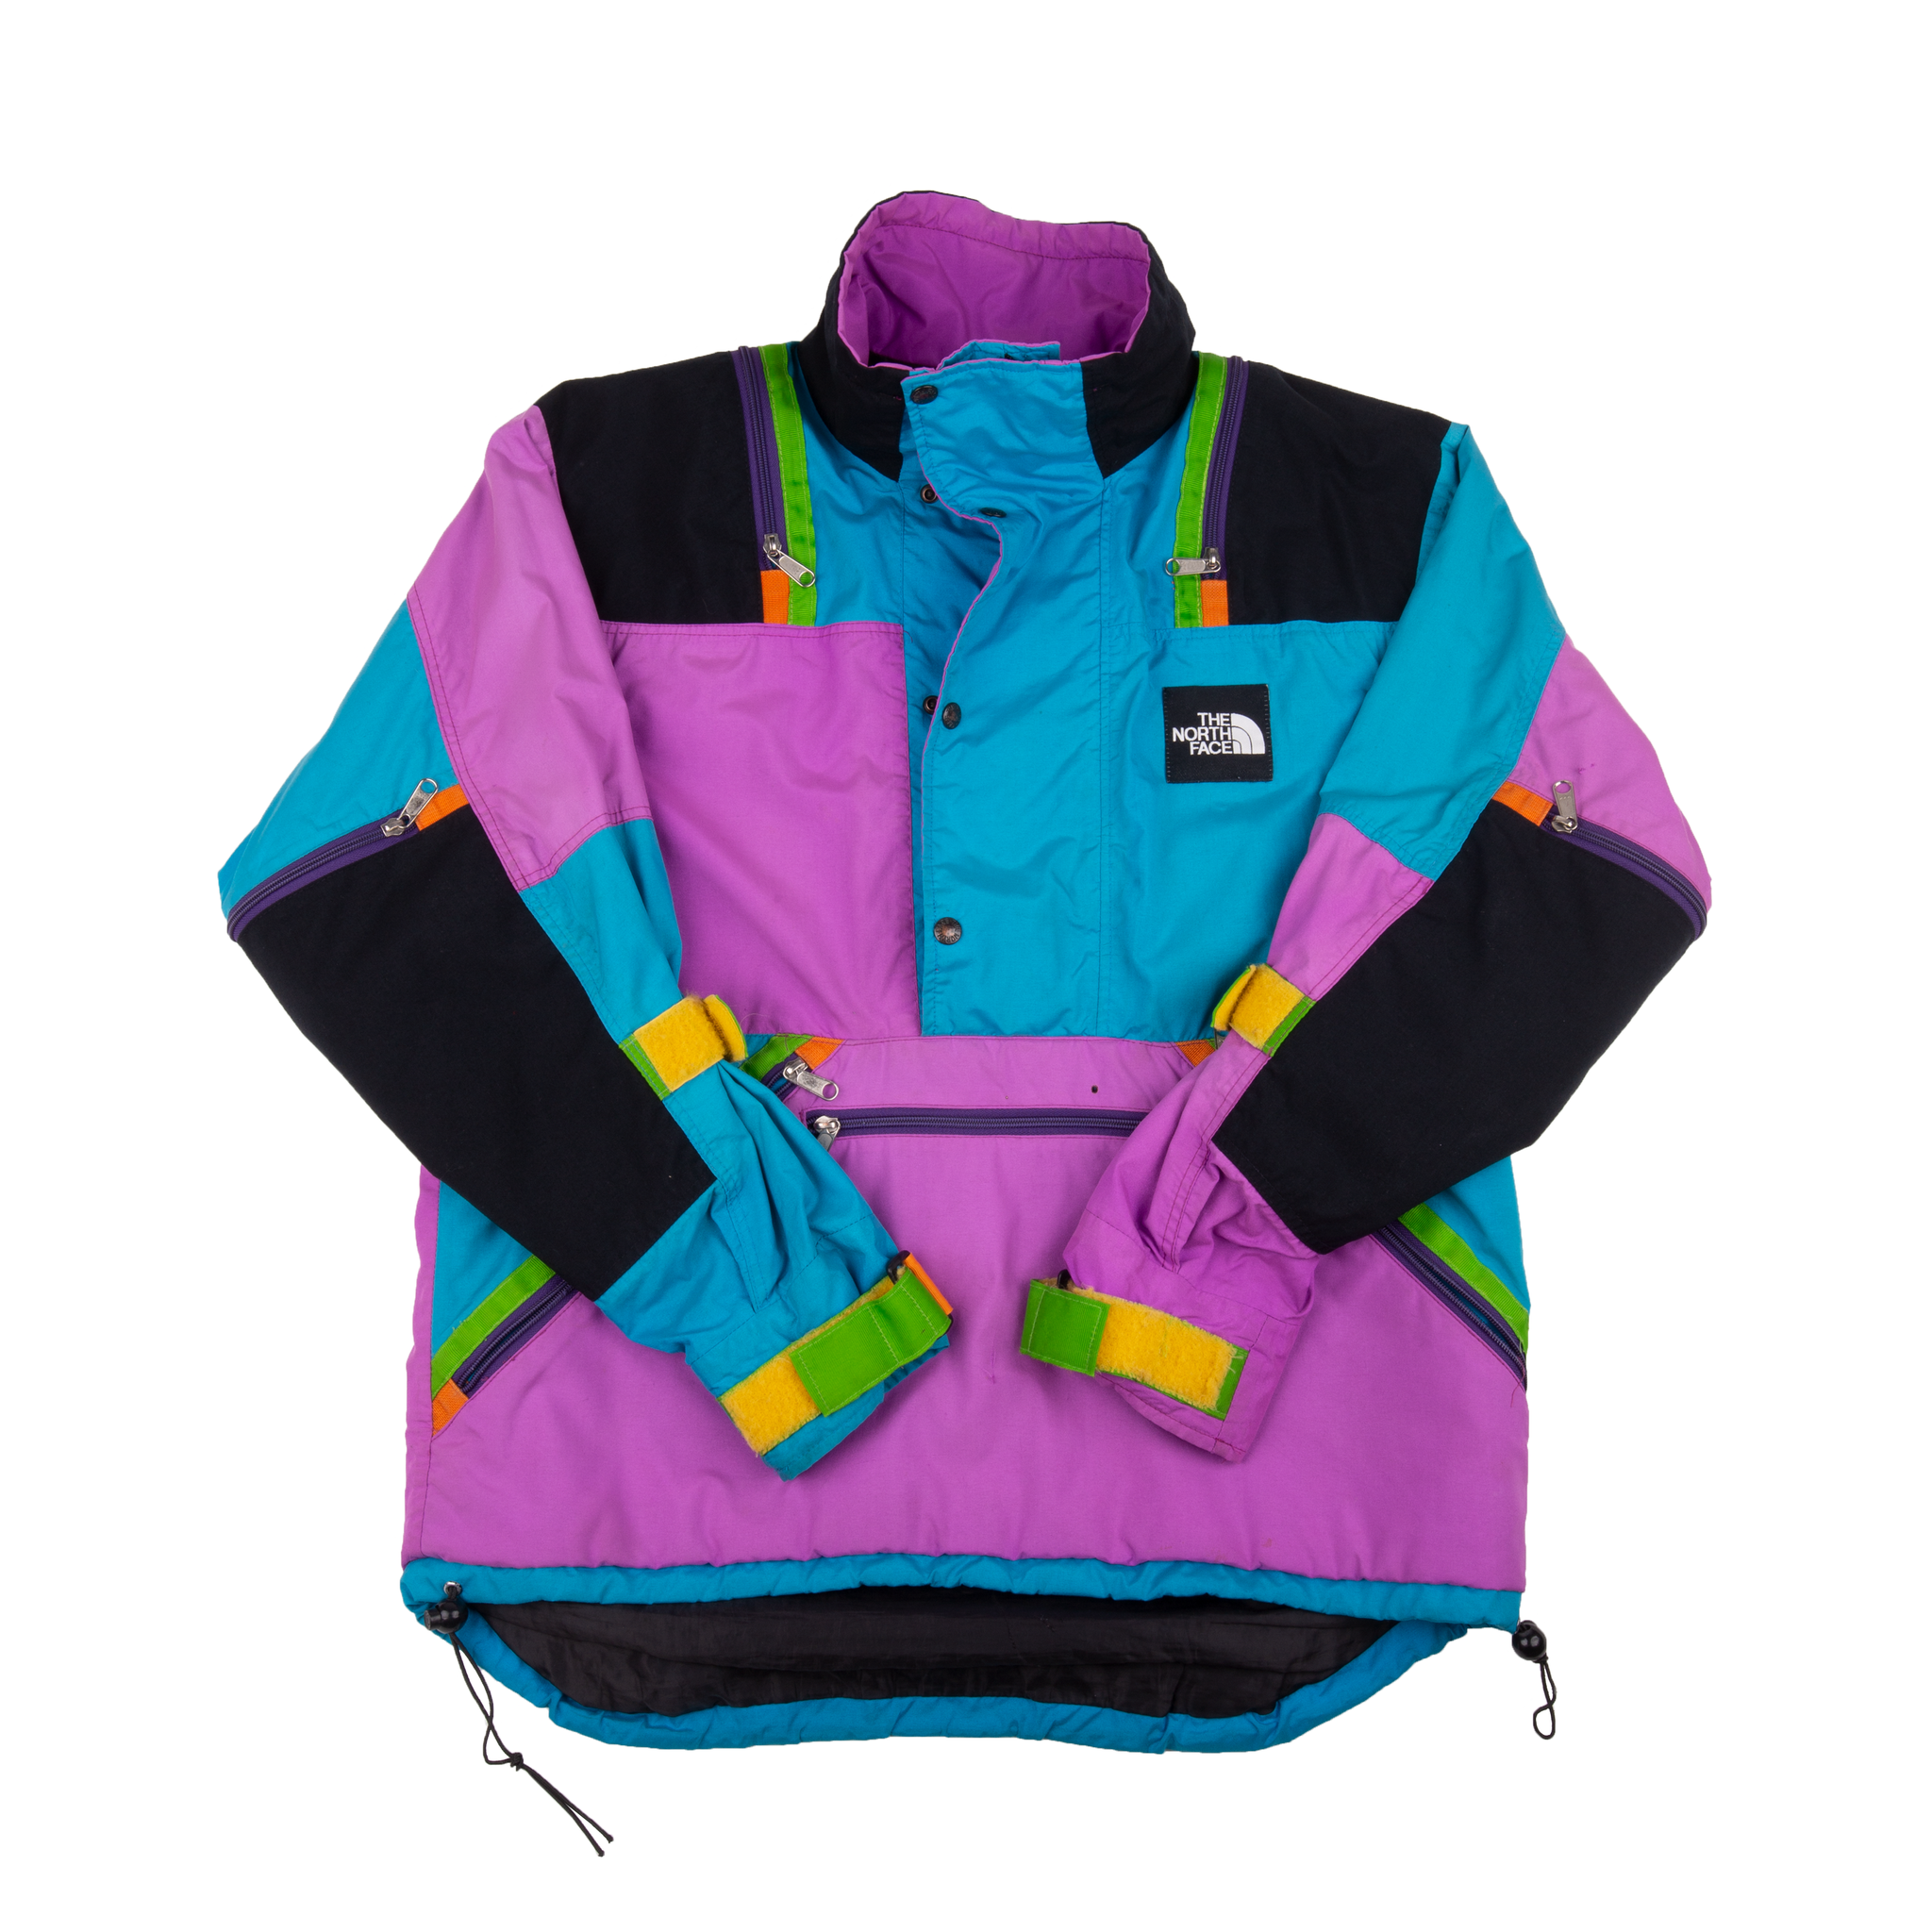 Vintage The North Face Ski Jacket